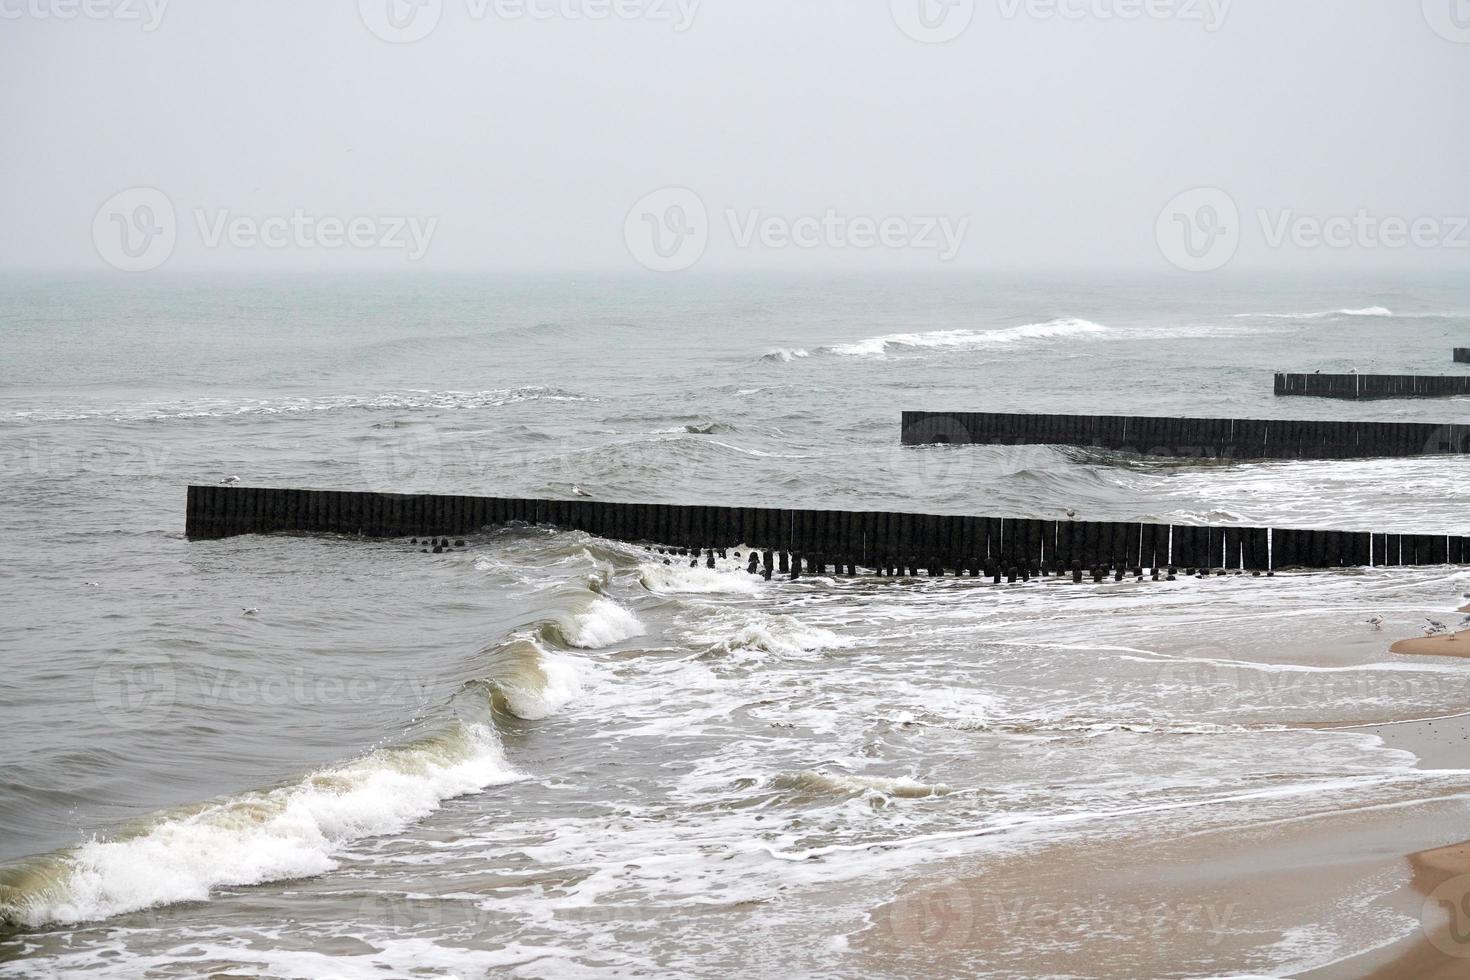 antiguos rompeolas largos de madera en las olas del mar, paisaje invernal foto